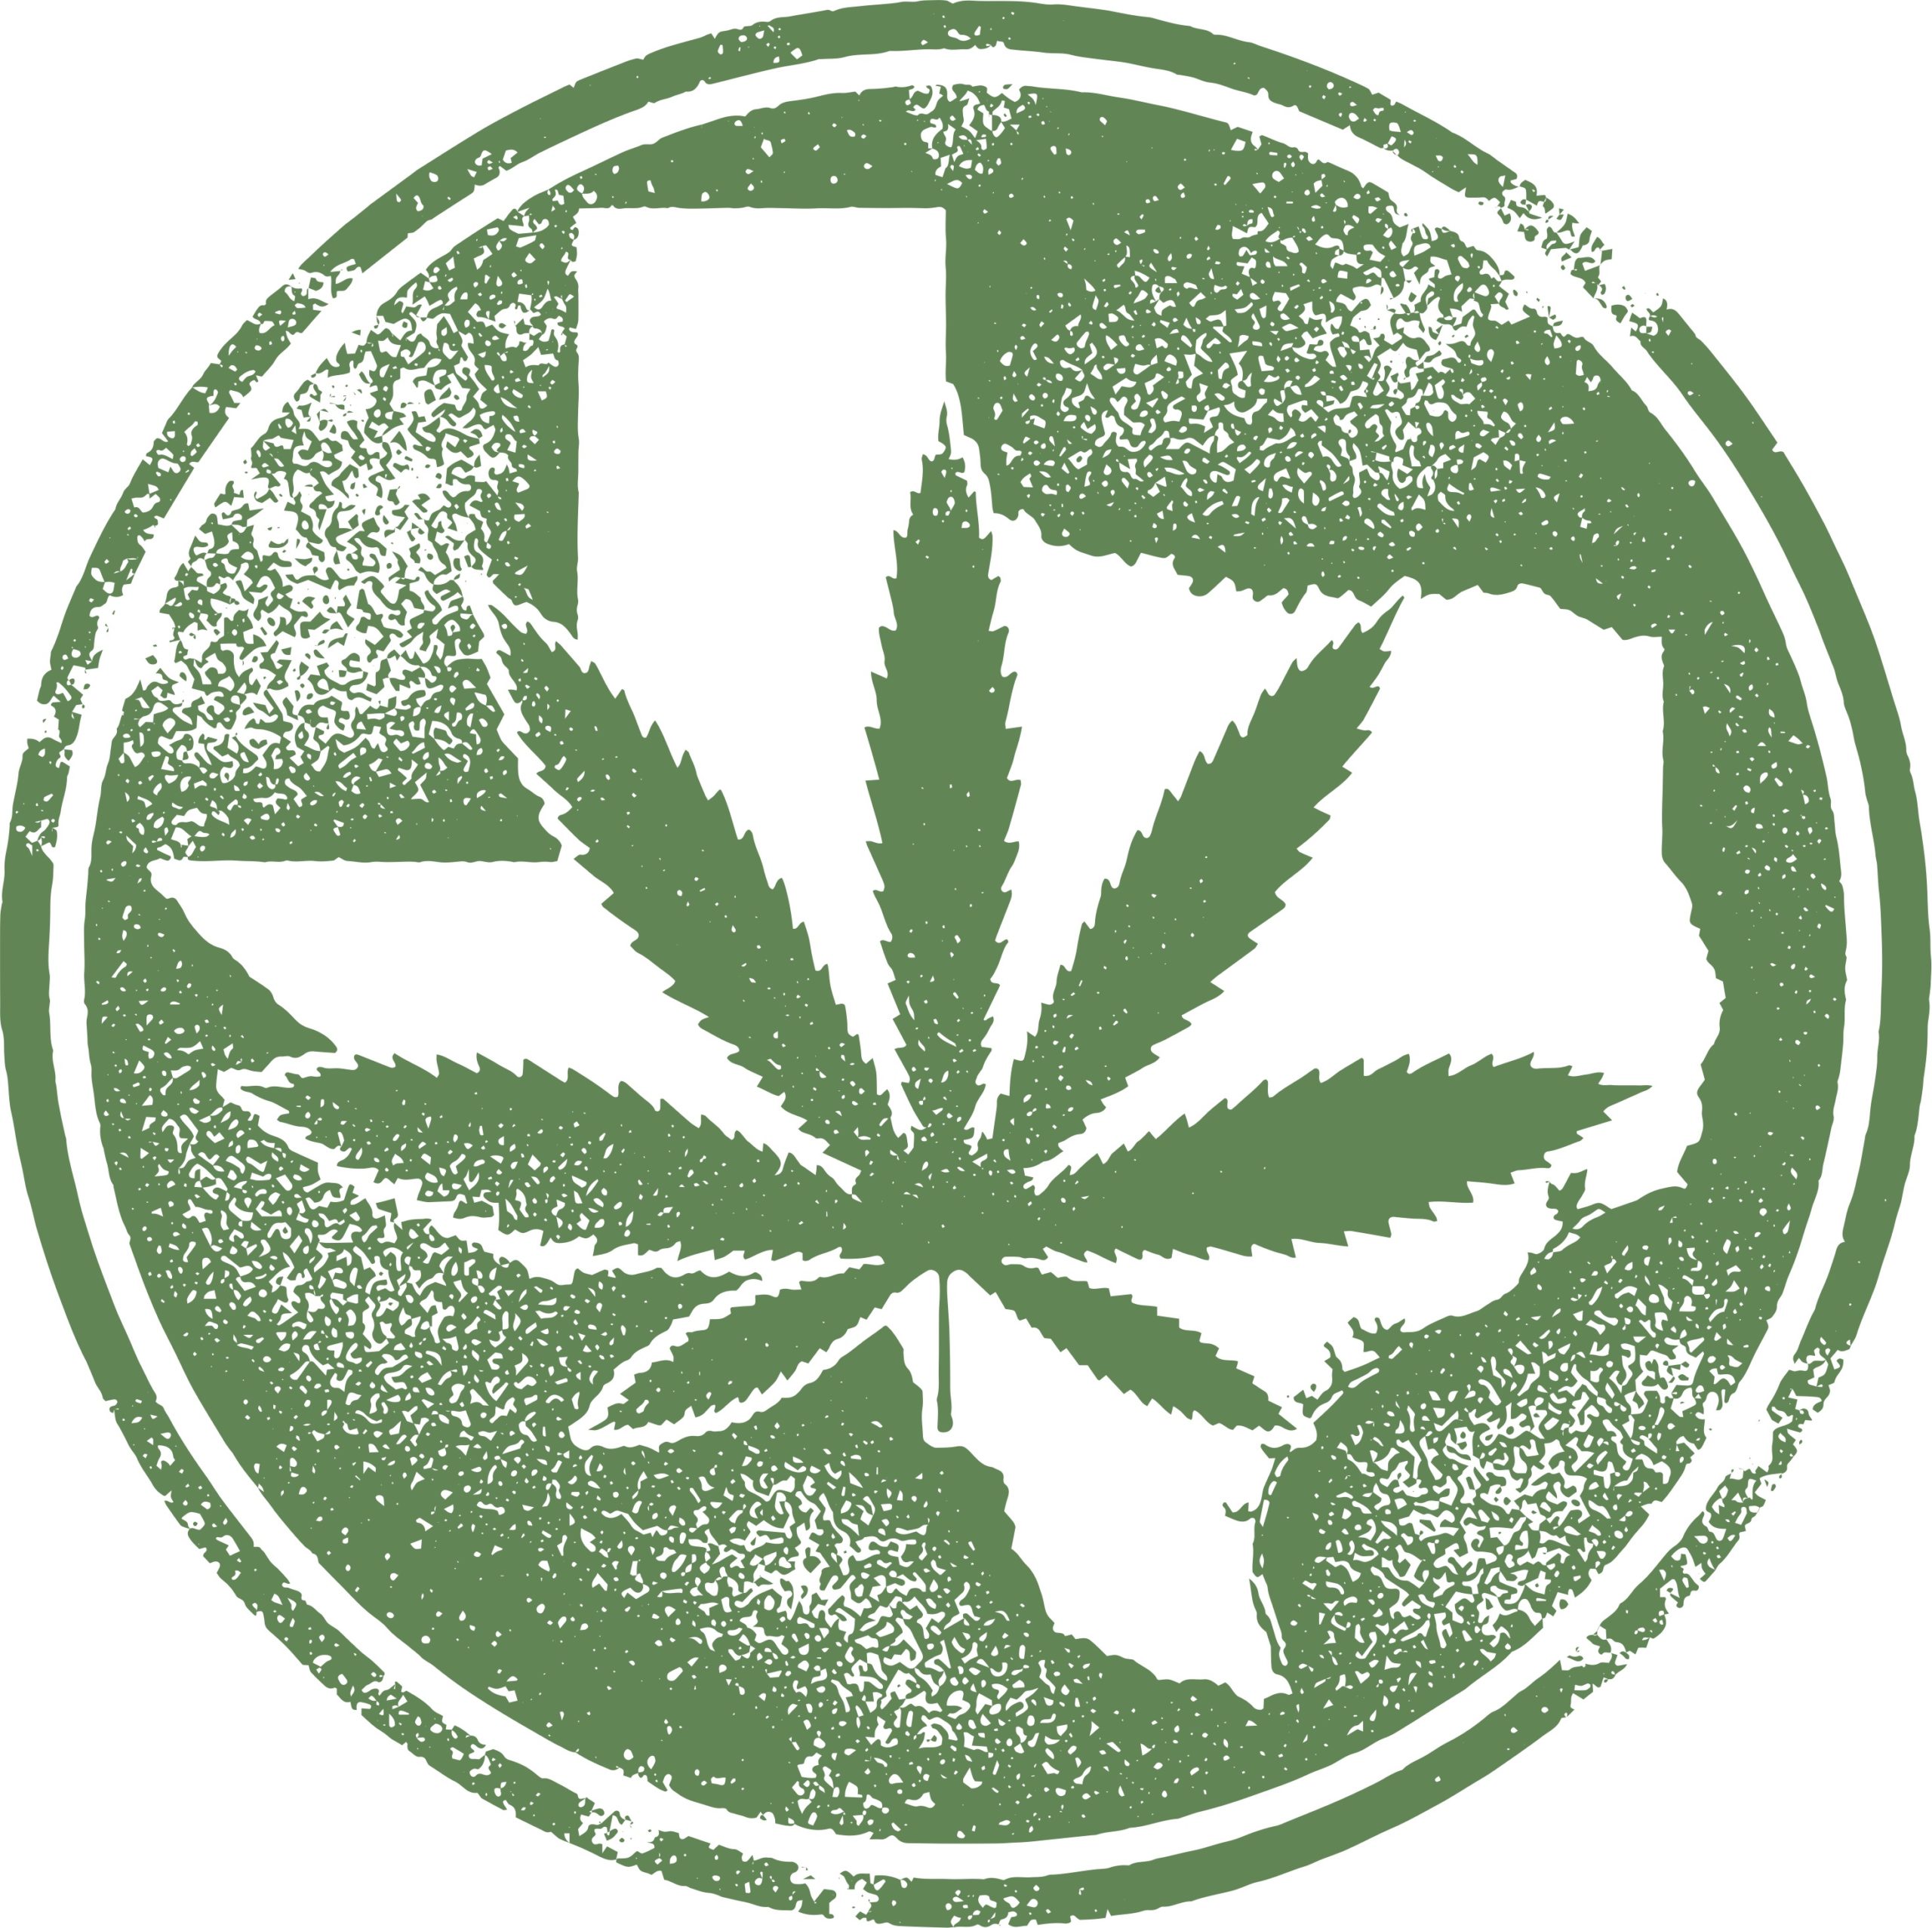 Growing medical marijuana in texas